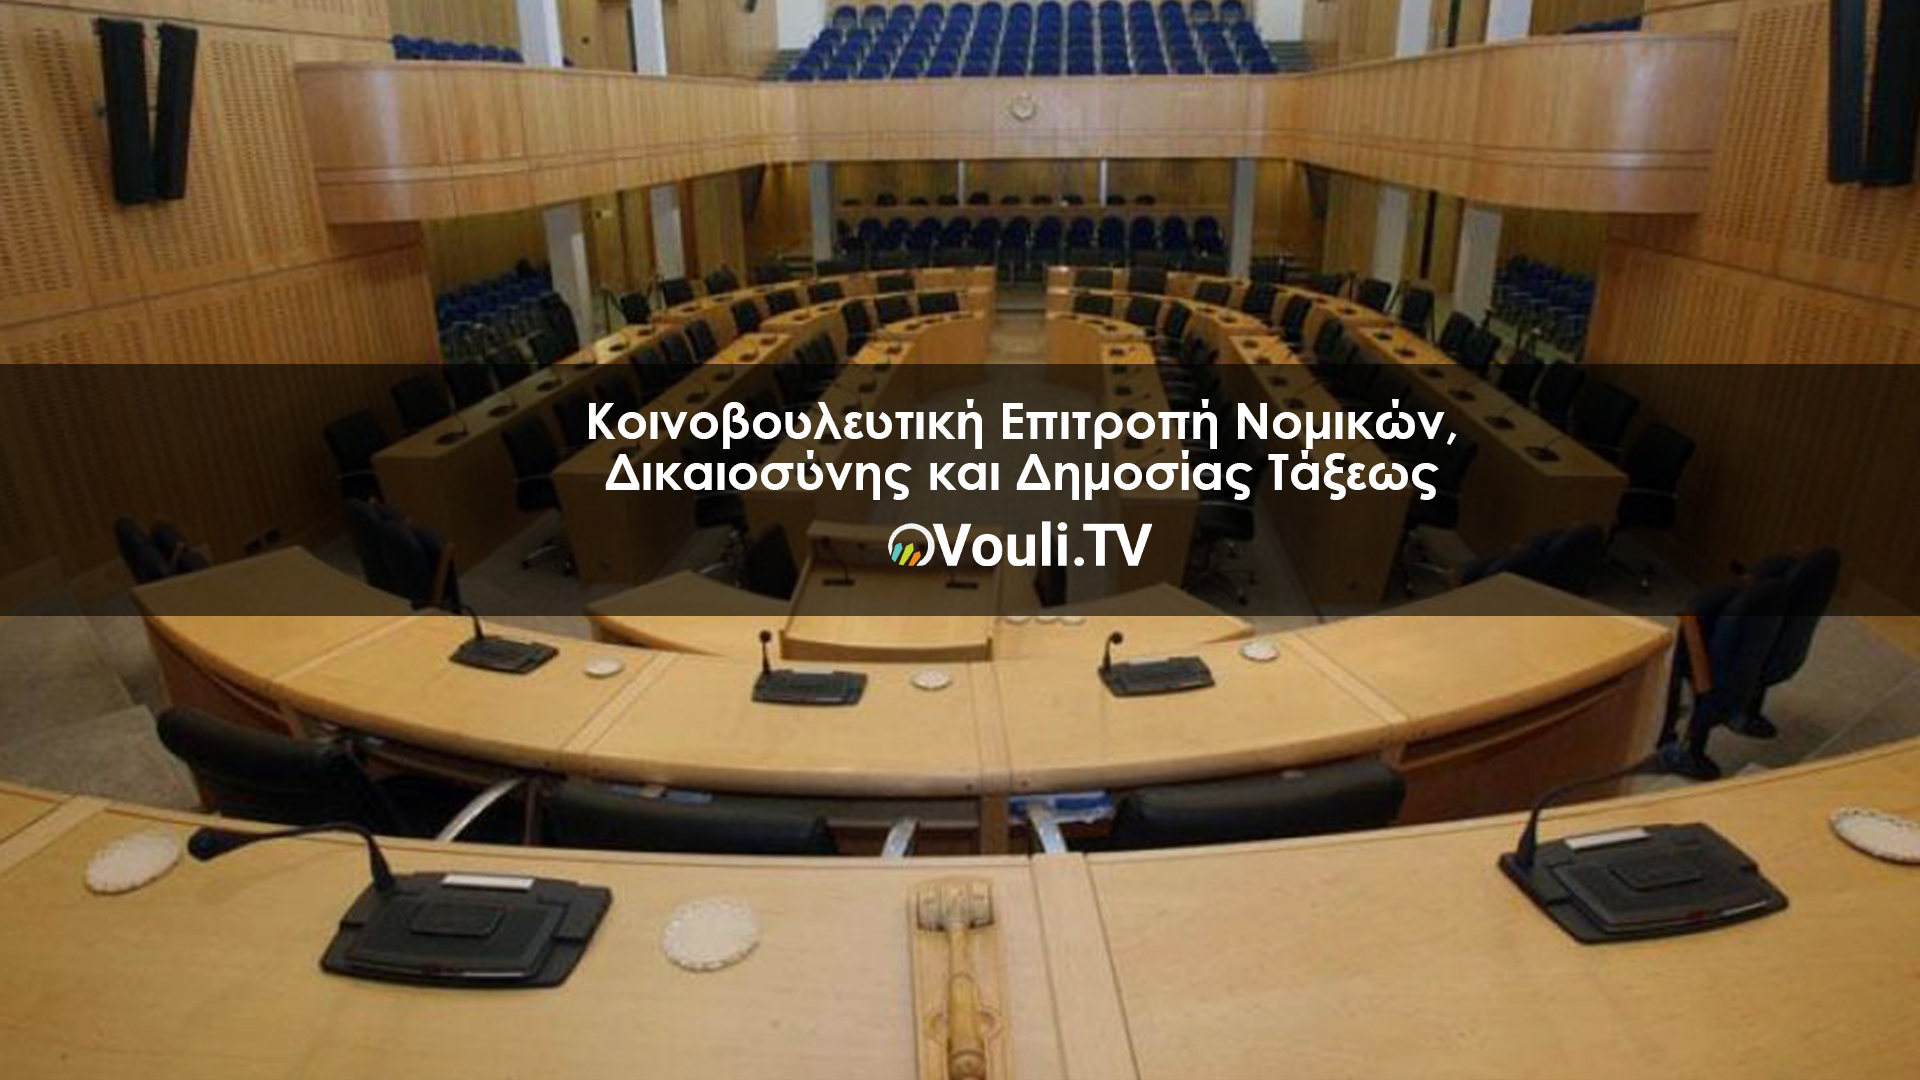 Κοινοβουλευτική Επιτροπή Νομικών, Δικαιοσύνης και Δημοσίας Τάξεως | Vouli report 21/09/2022